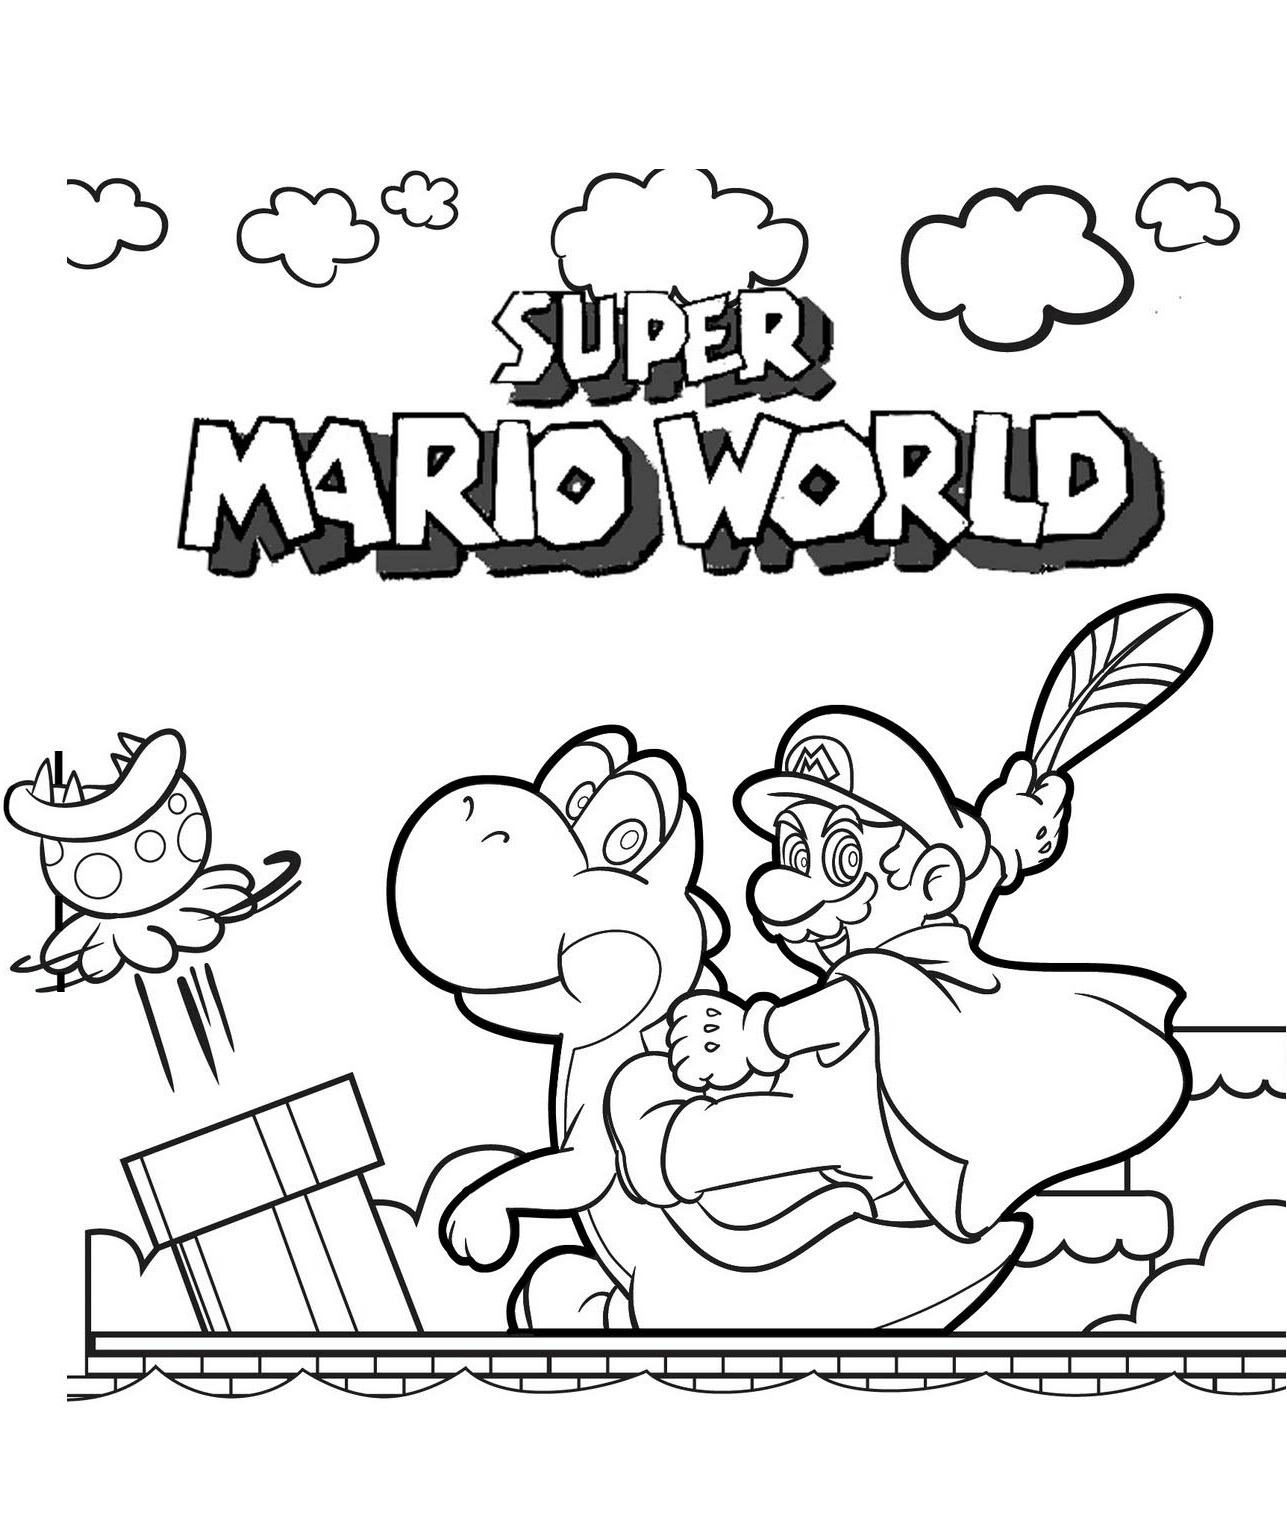 Le avventure di Super Mario World da Mario